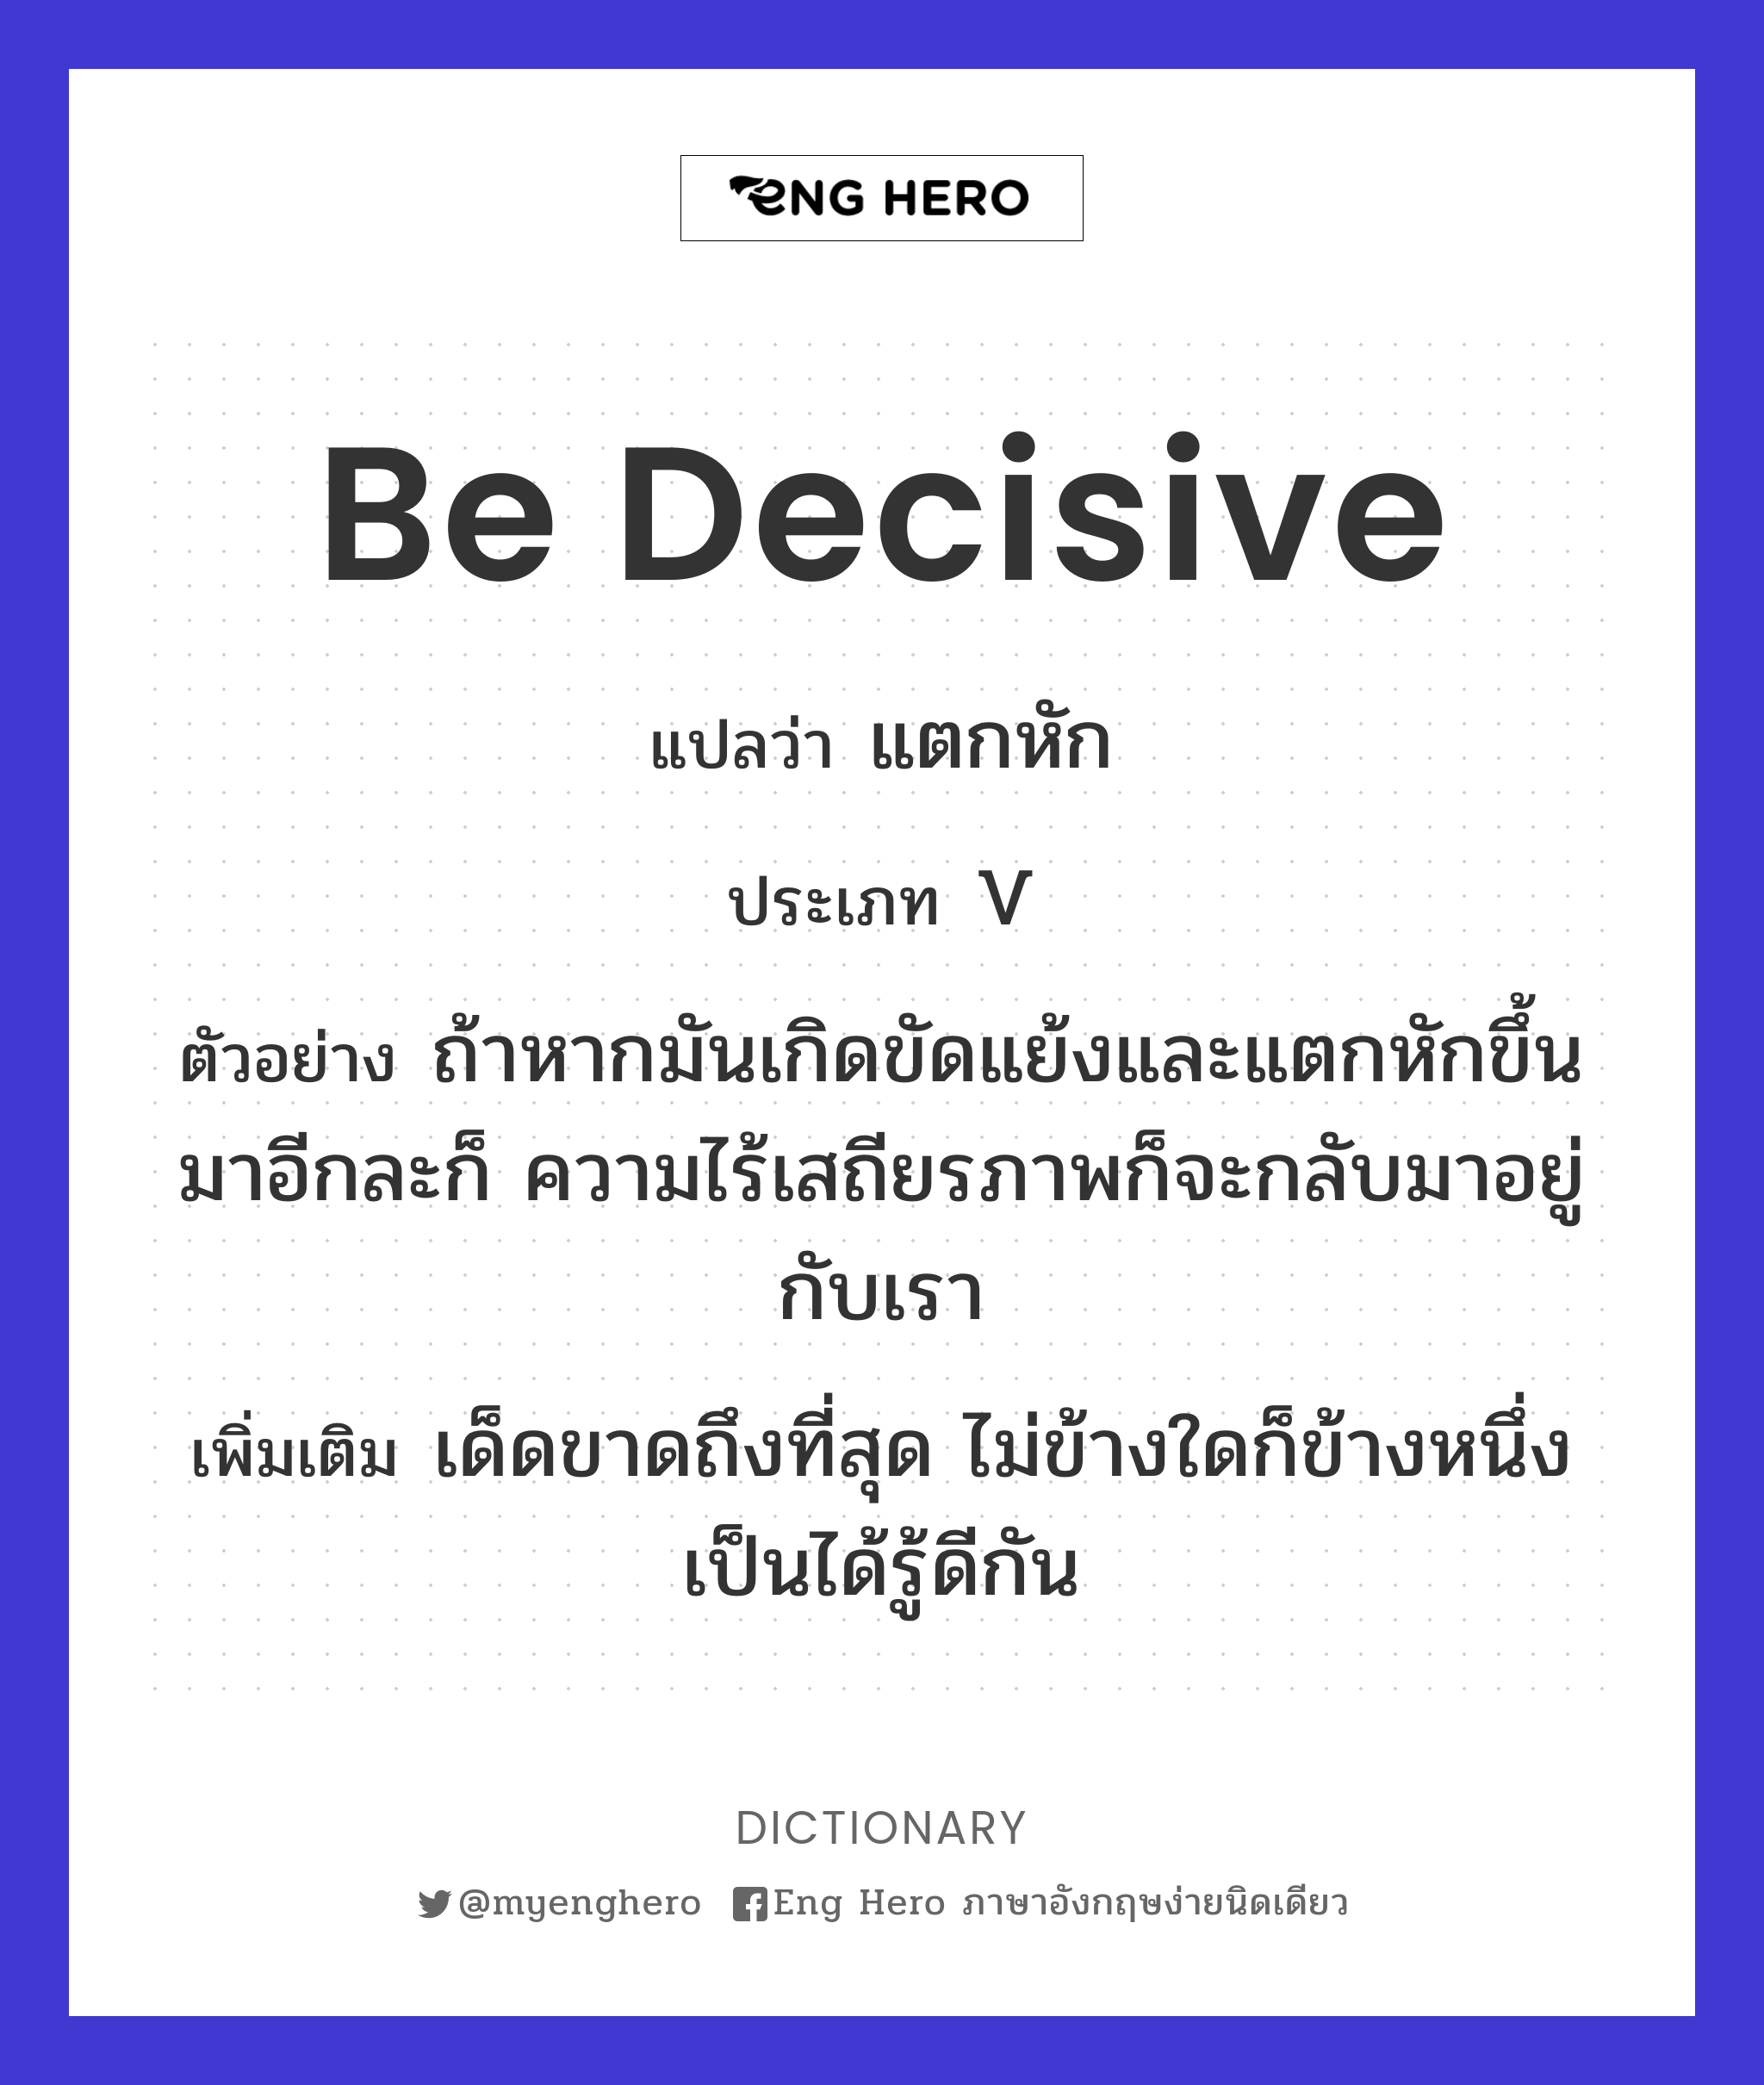 be decisive